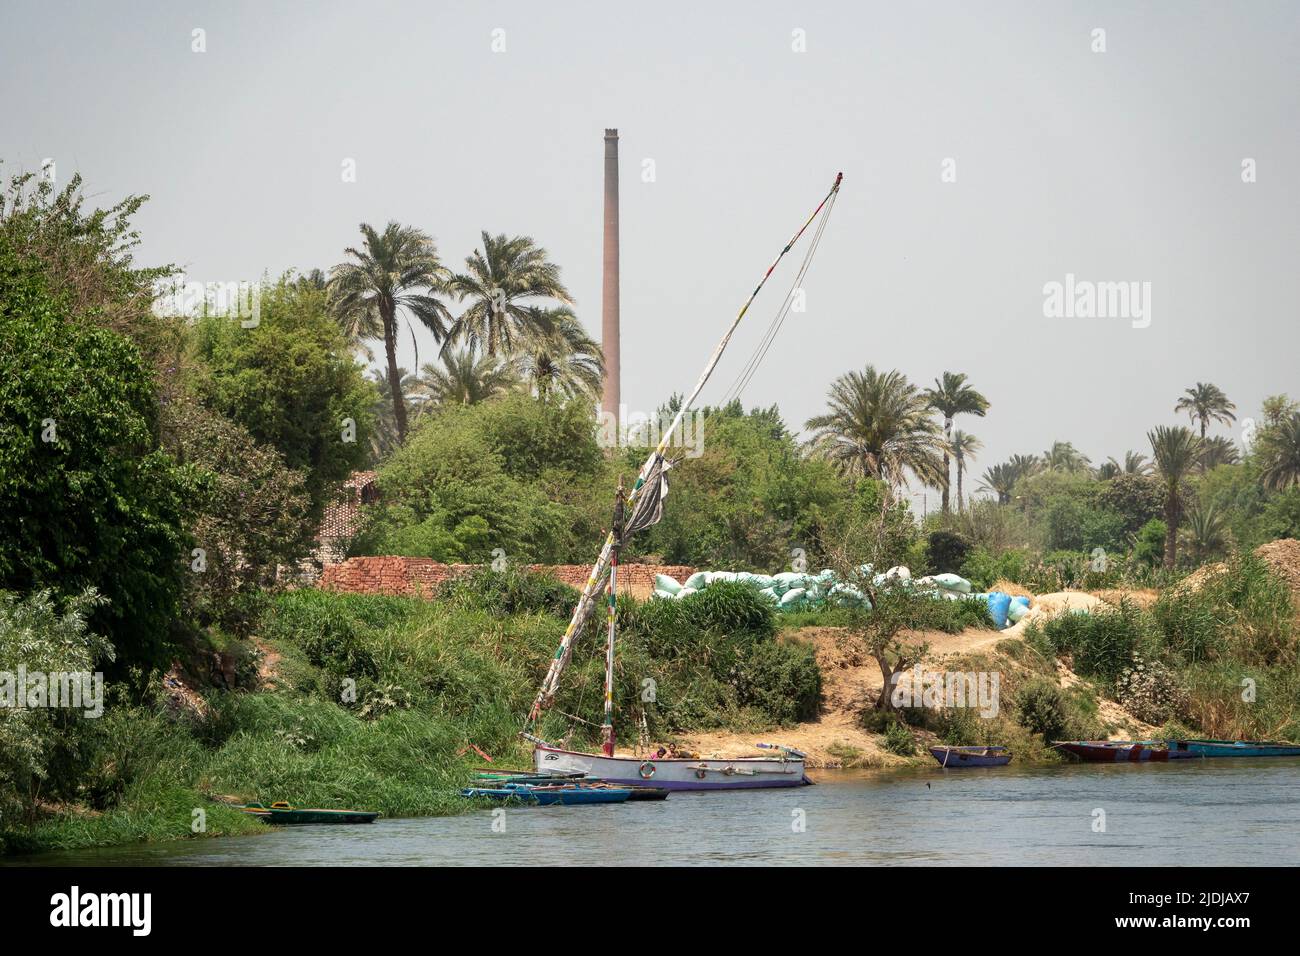 Una felucca tradicional con varios pequeños barcos amarrados en las cañas a orillas del río Nilo con ladrillo y chimenea en el fondo Foto de stock